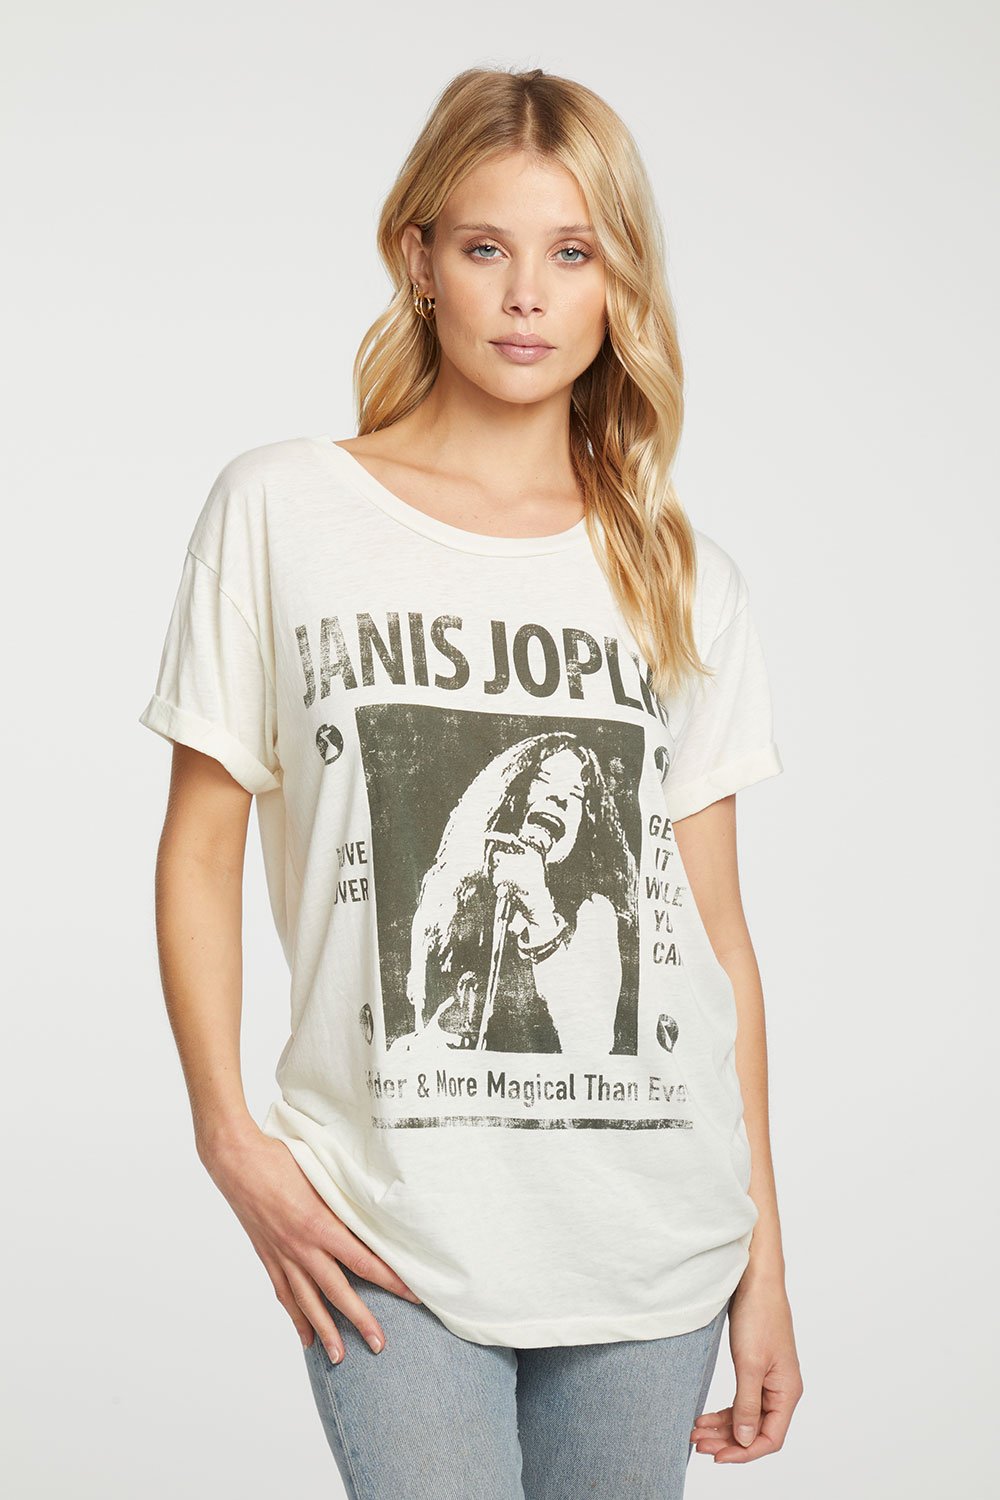 Janis Joplin- More Magical